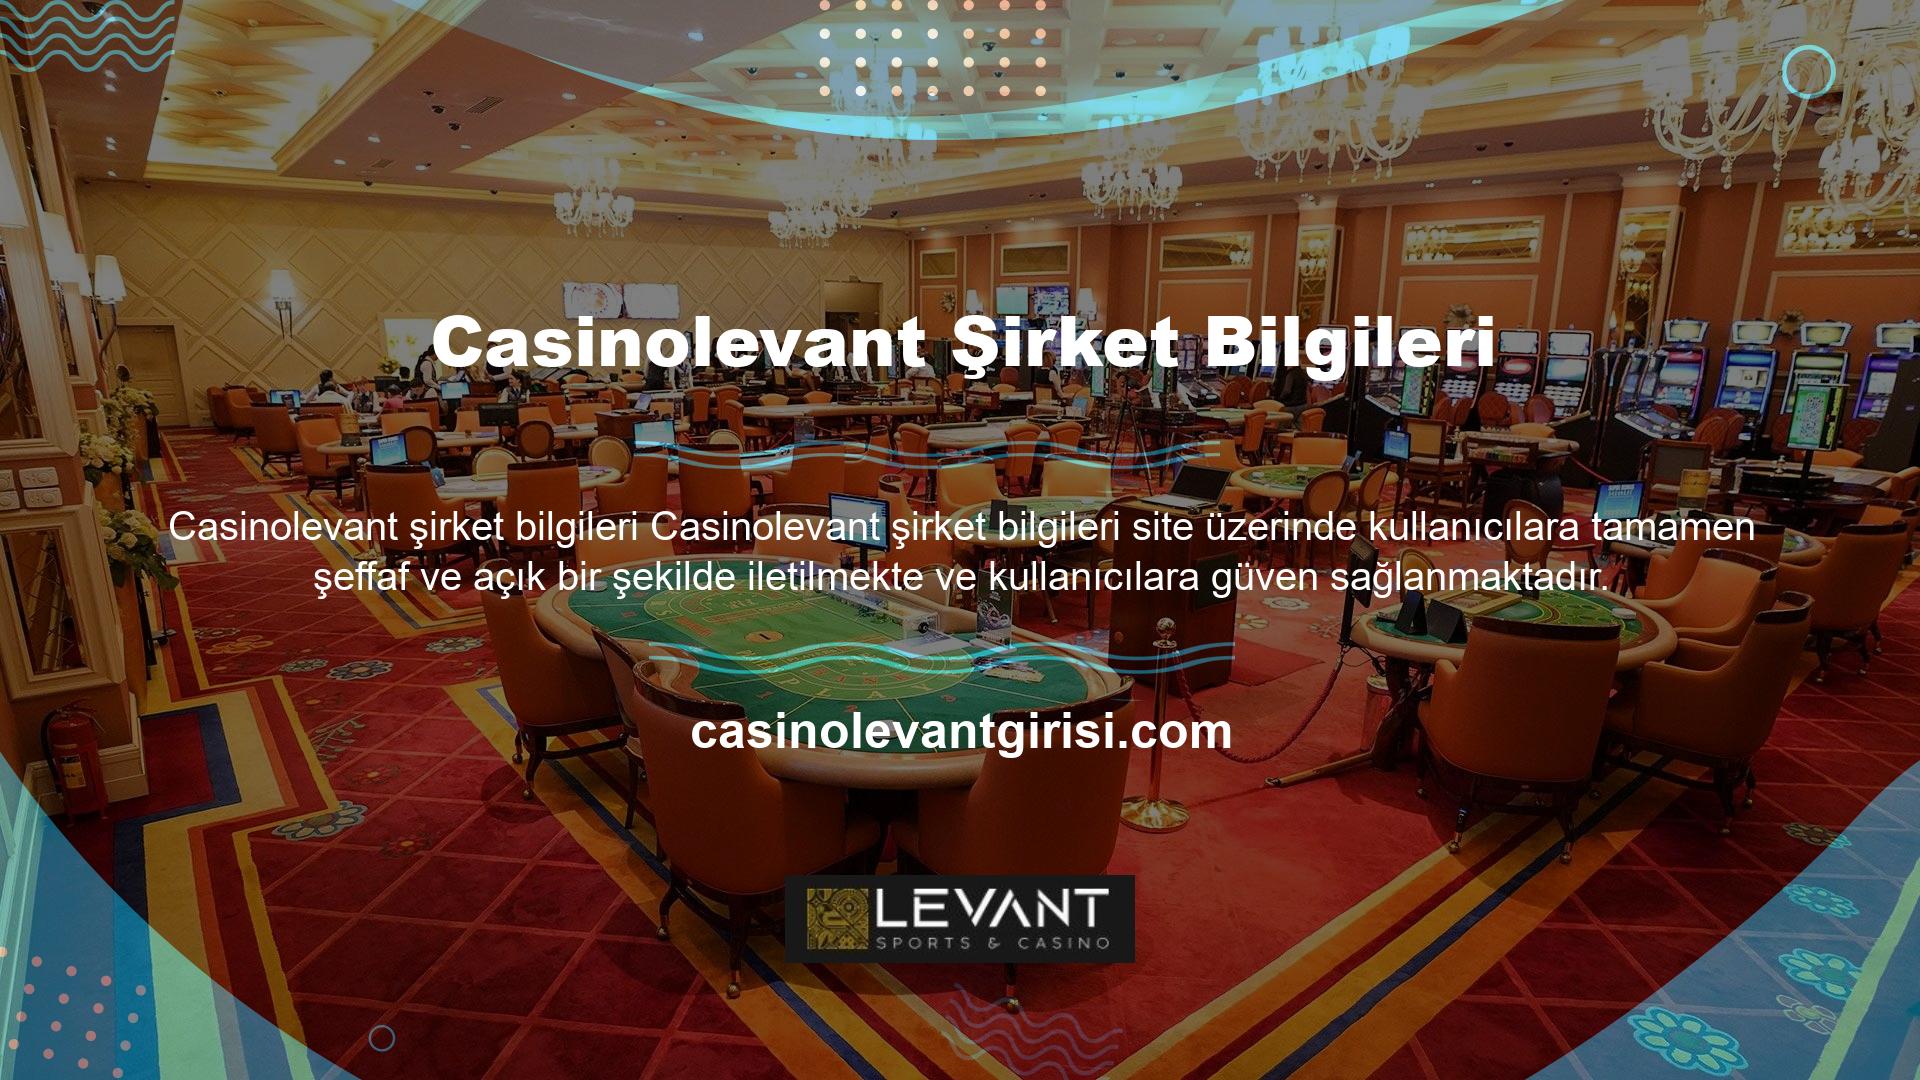 Casinolevant, hızla büyüyerek kullanıcılarının saygısını ve güvenini kazanmış bir site haline gelen bir online bahis ve canlı casino şirketidir